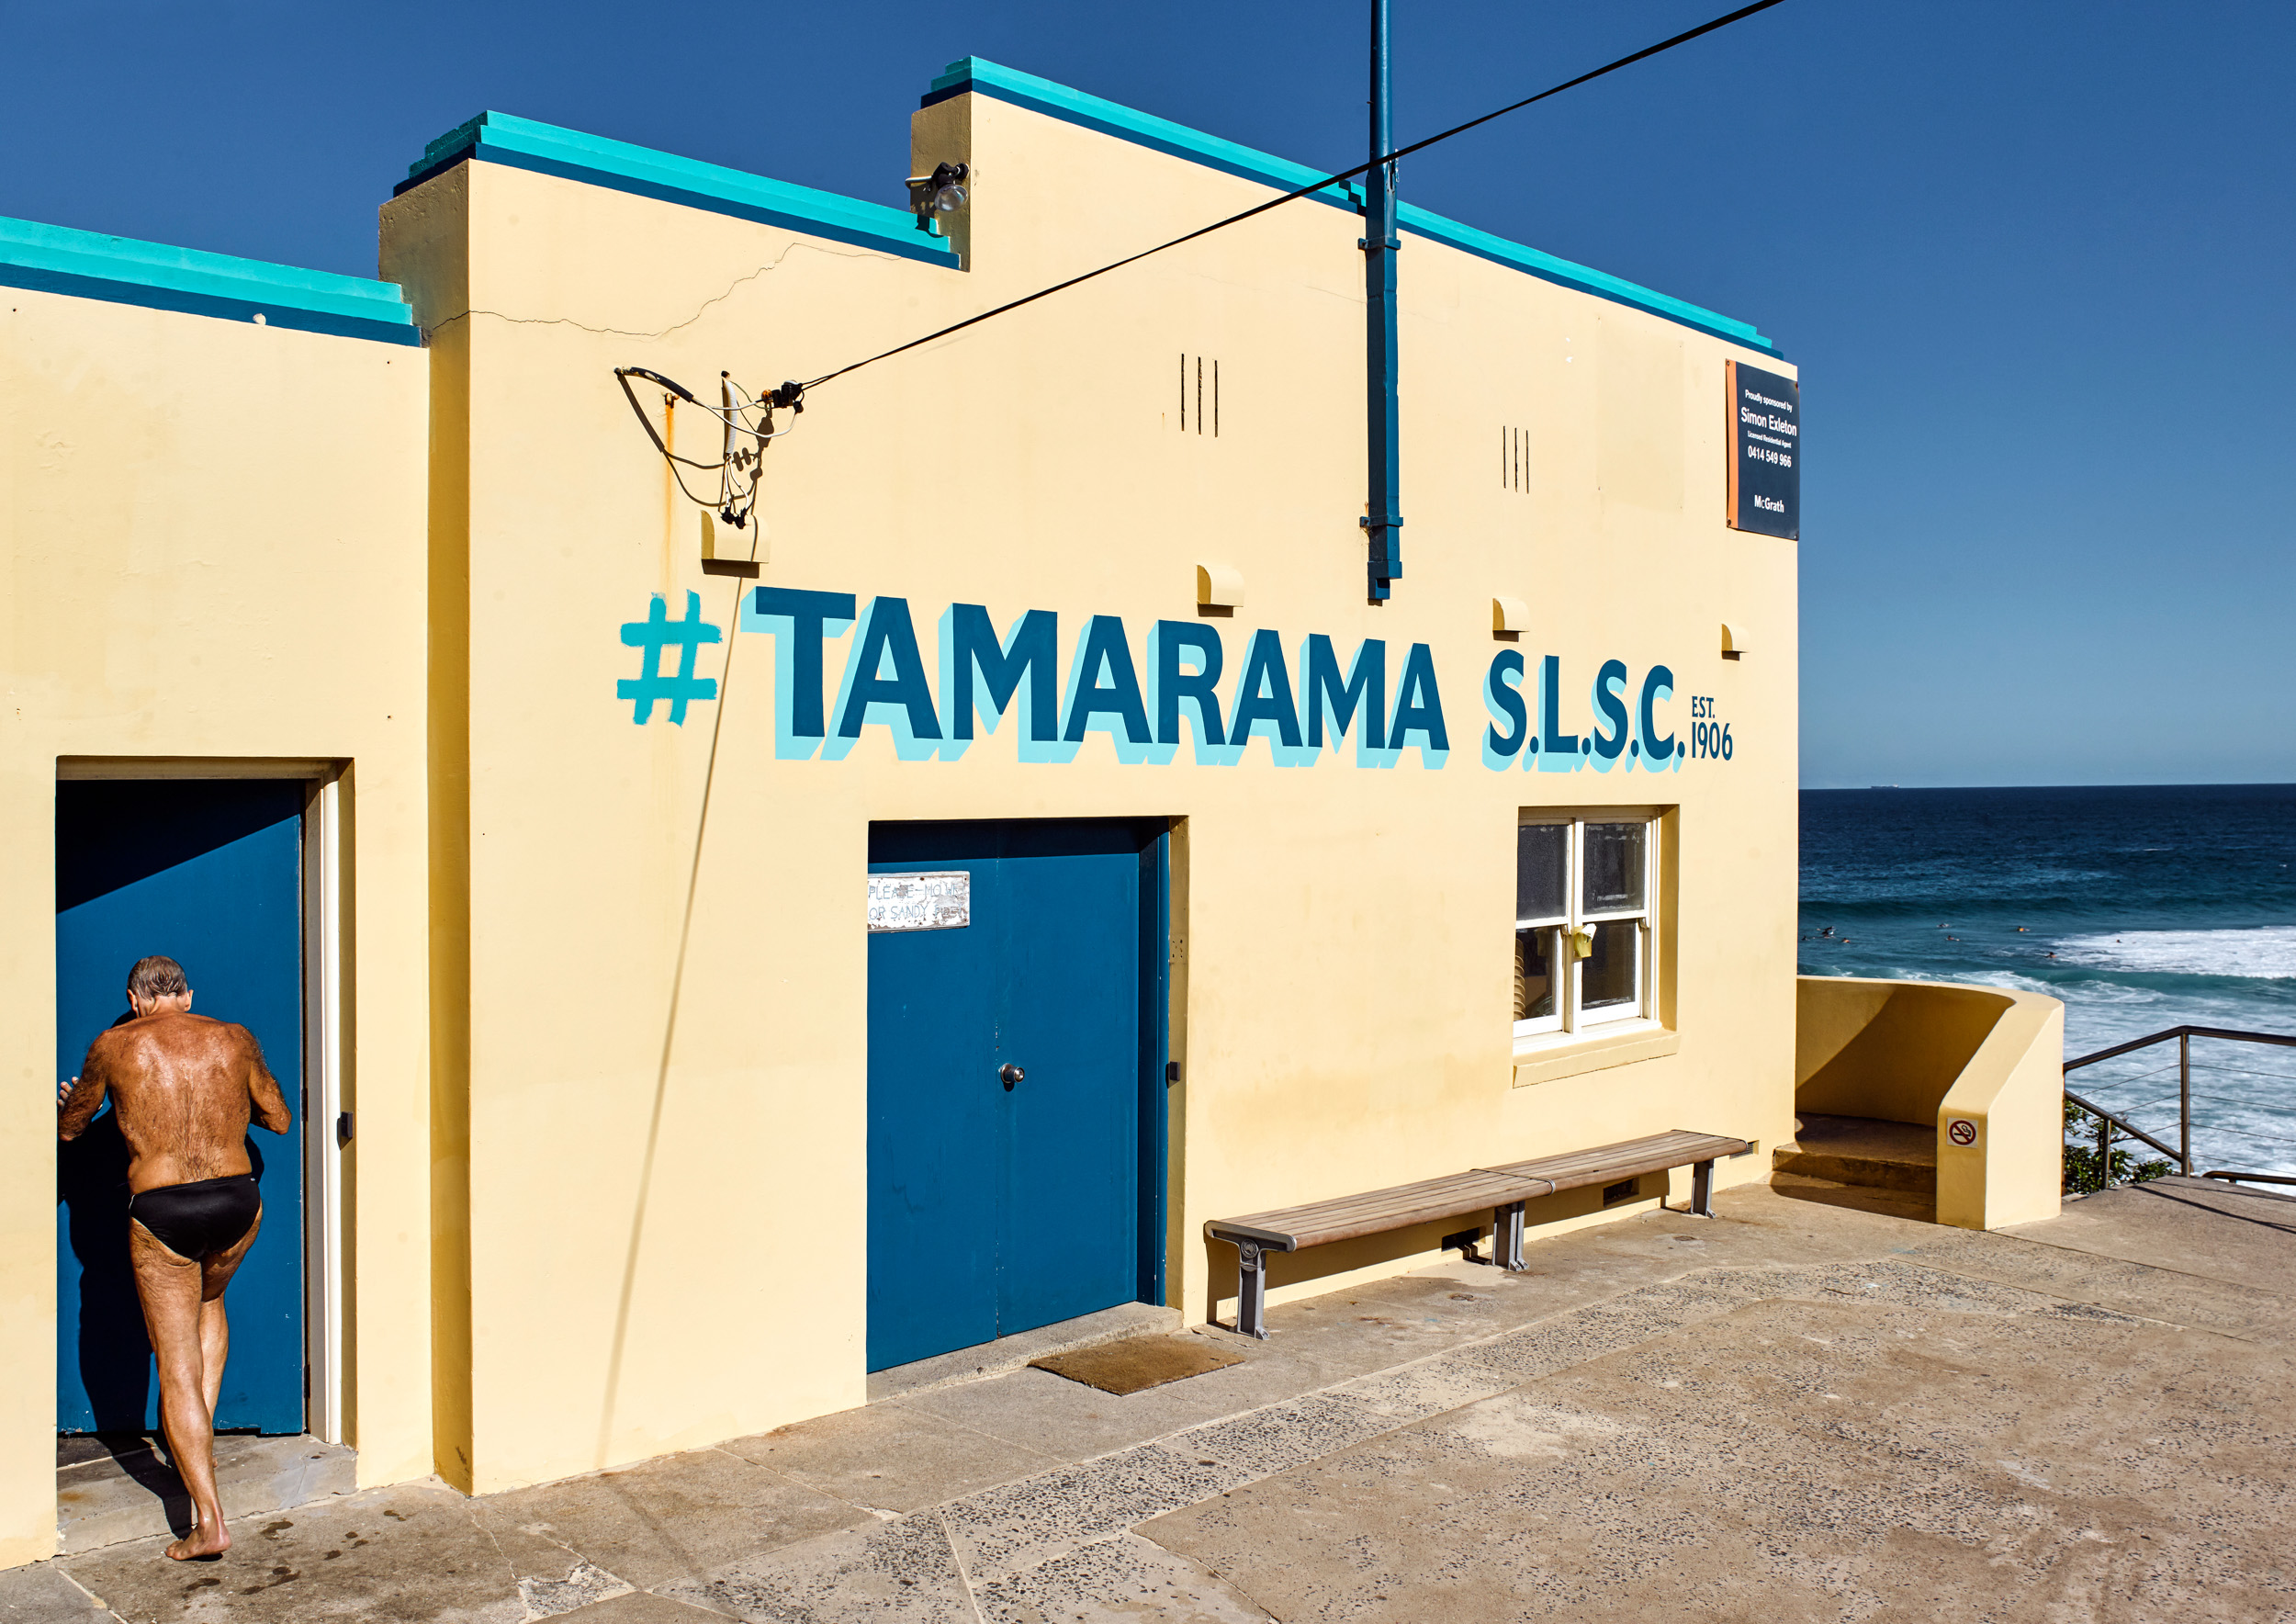 Tamarama S.L.S.C., 2016